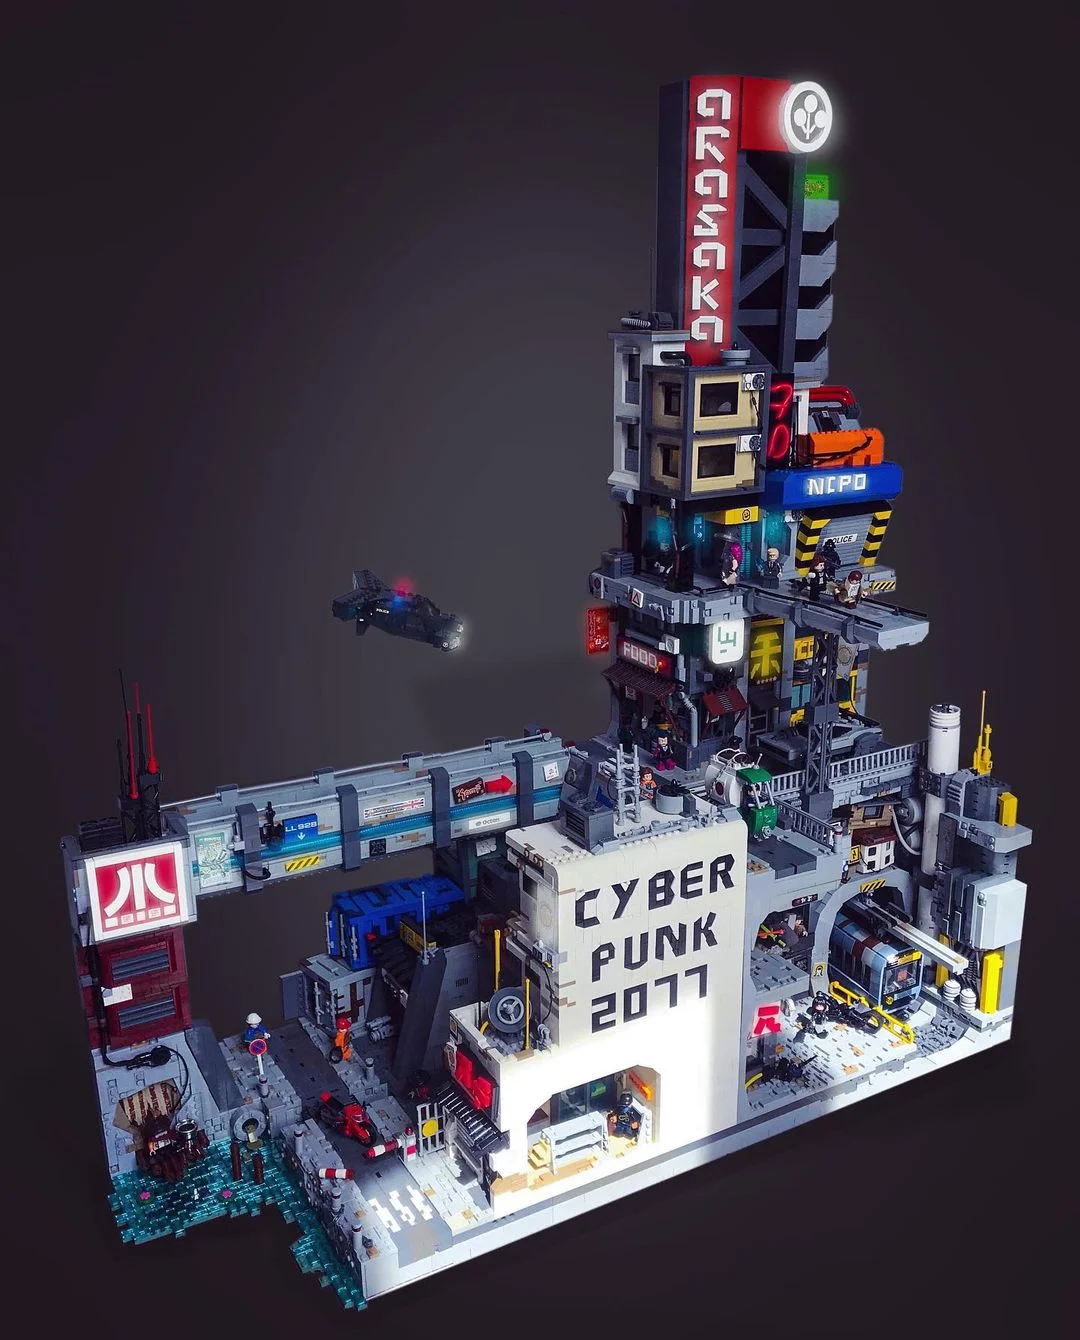 Фанат сделал город из Cyberpunk 2077 в LEGO. Выглядит лучше, чем на консолях - изображение обложка